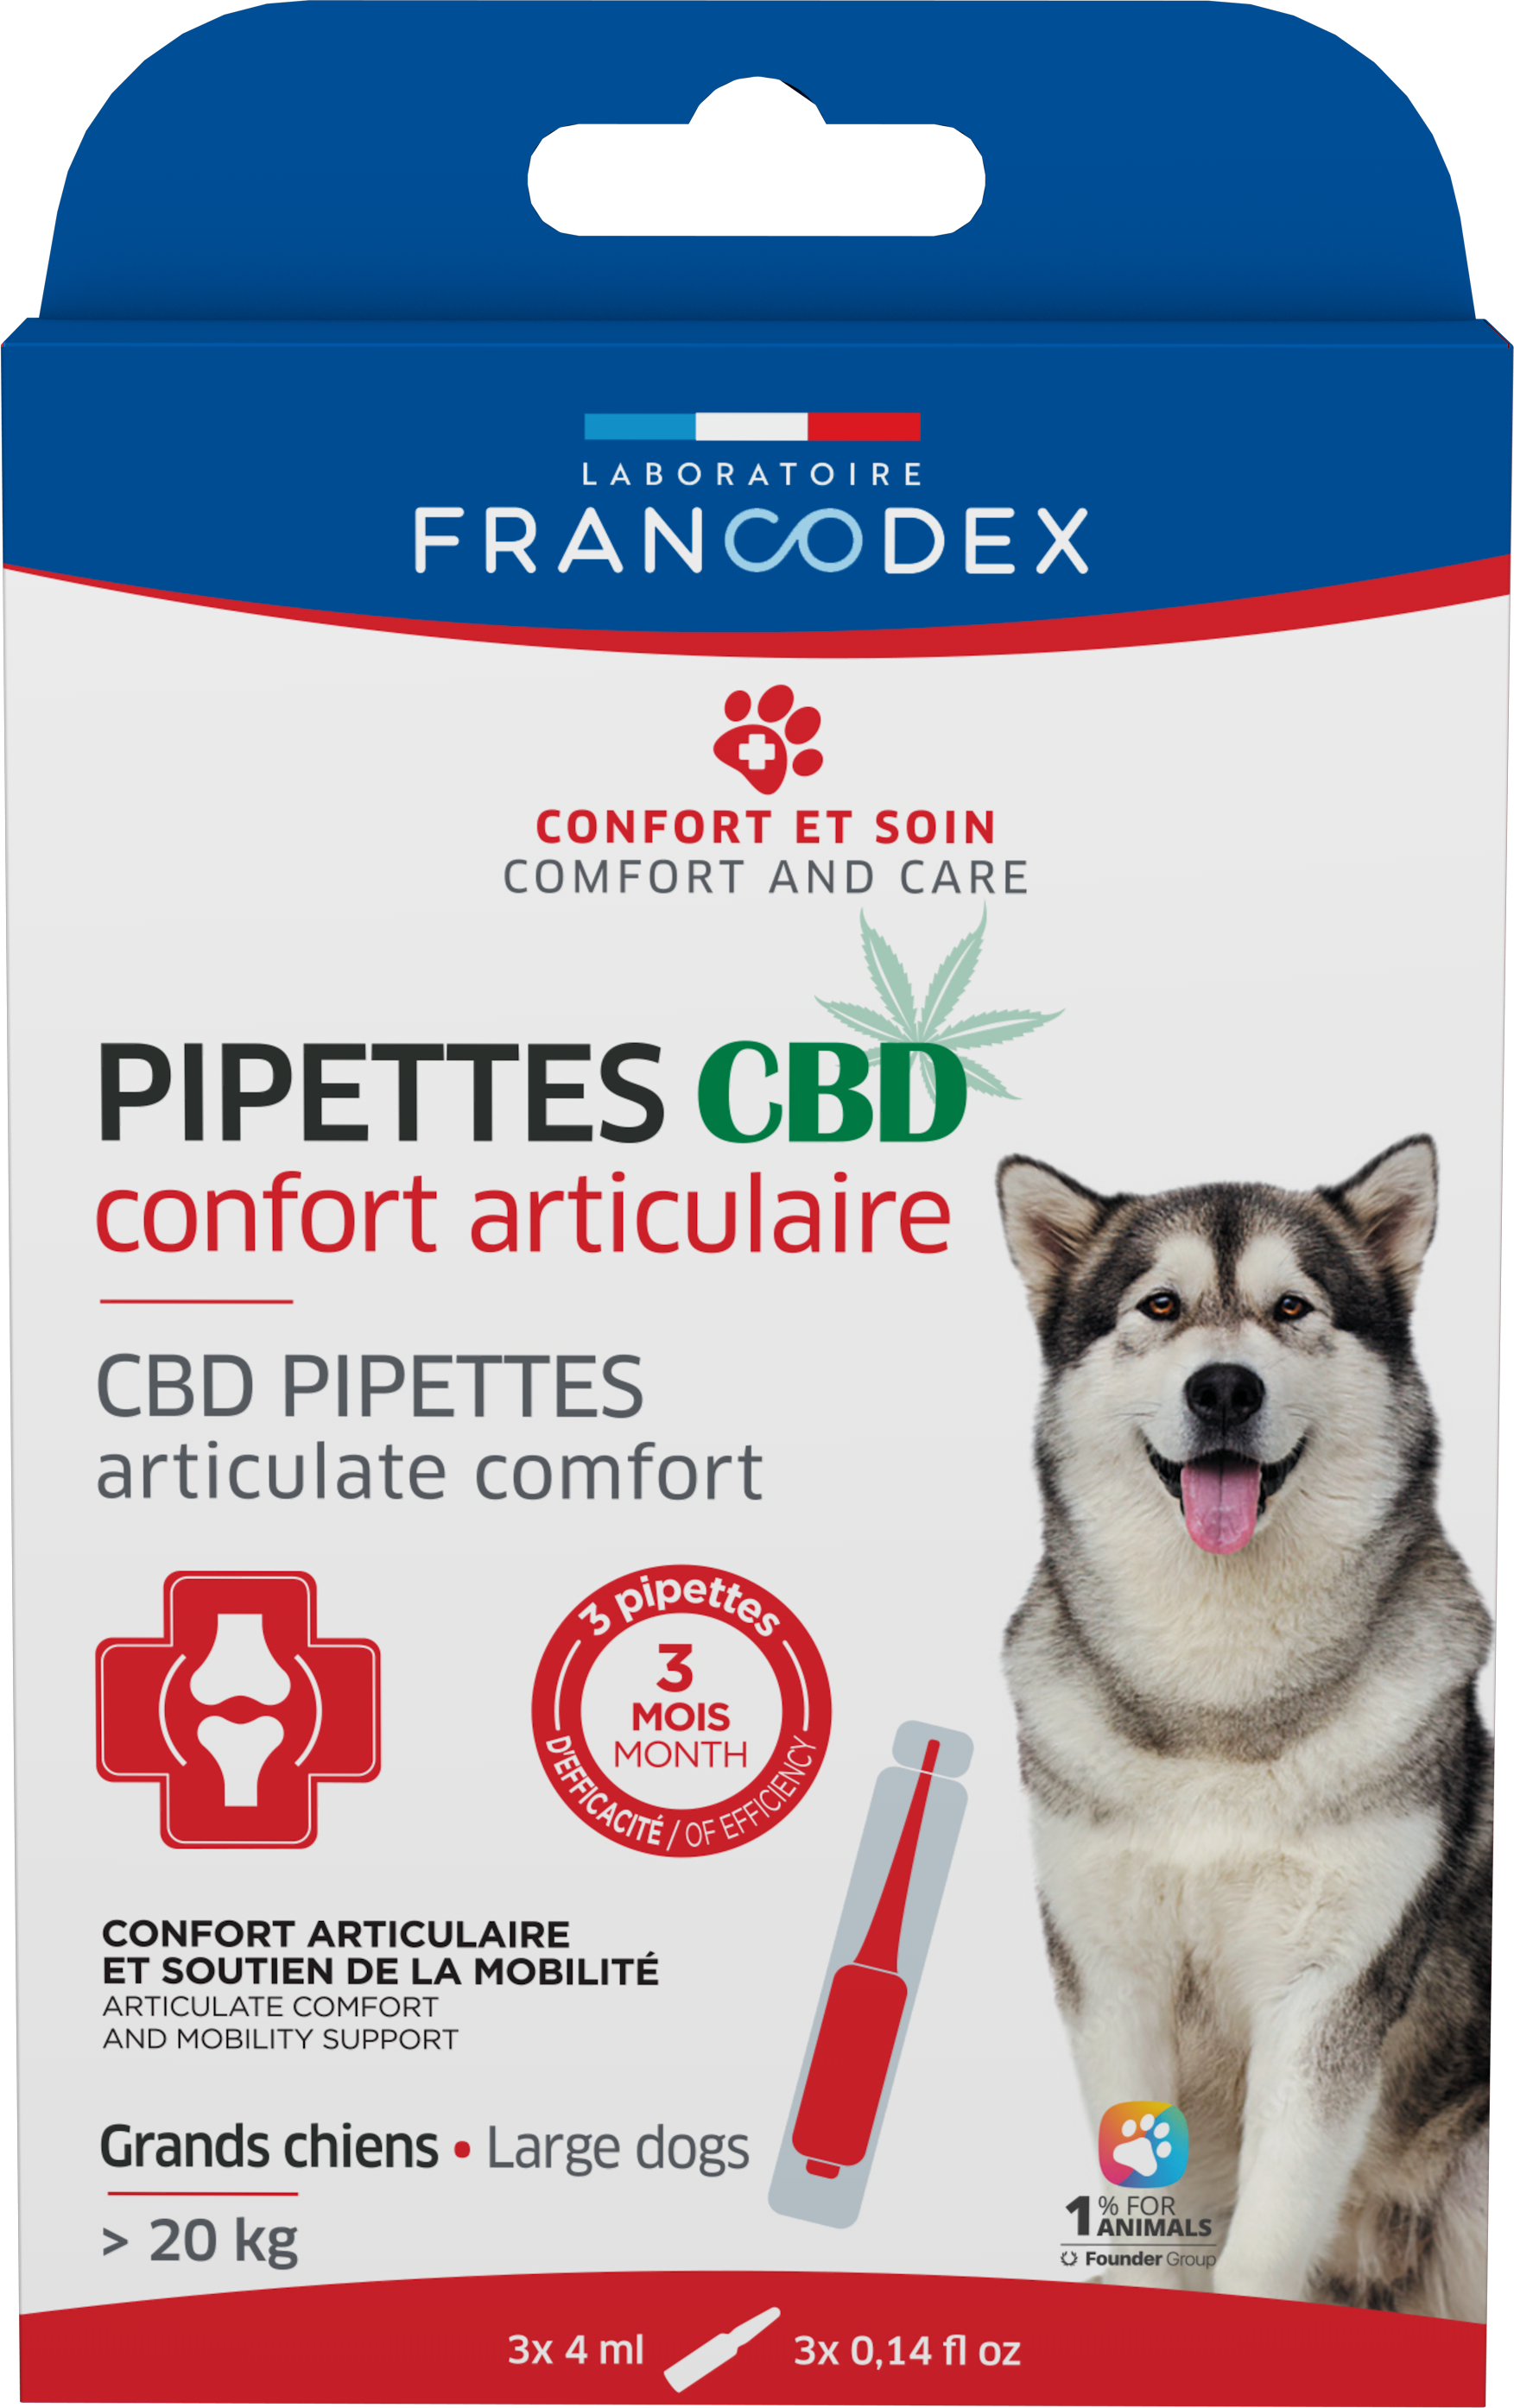 Francodex Pipettes CBD confort articulaire